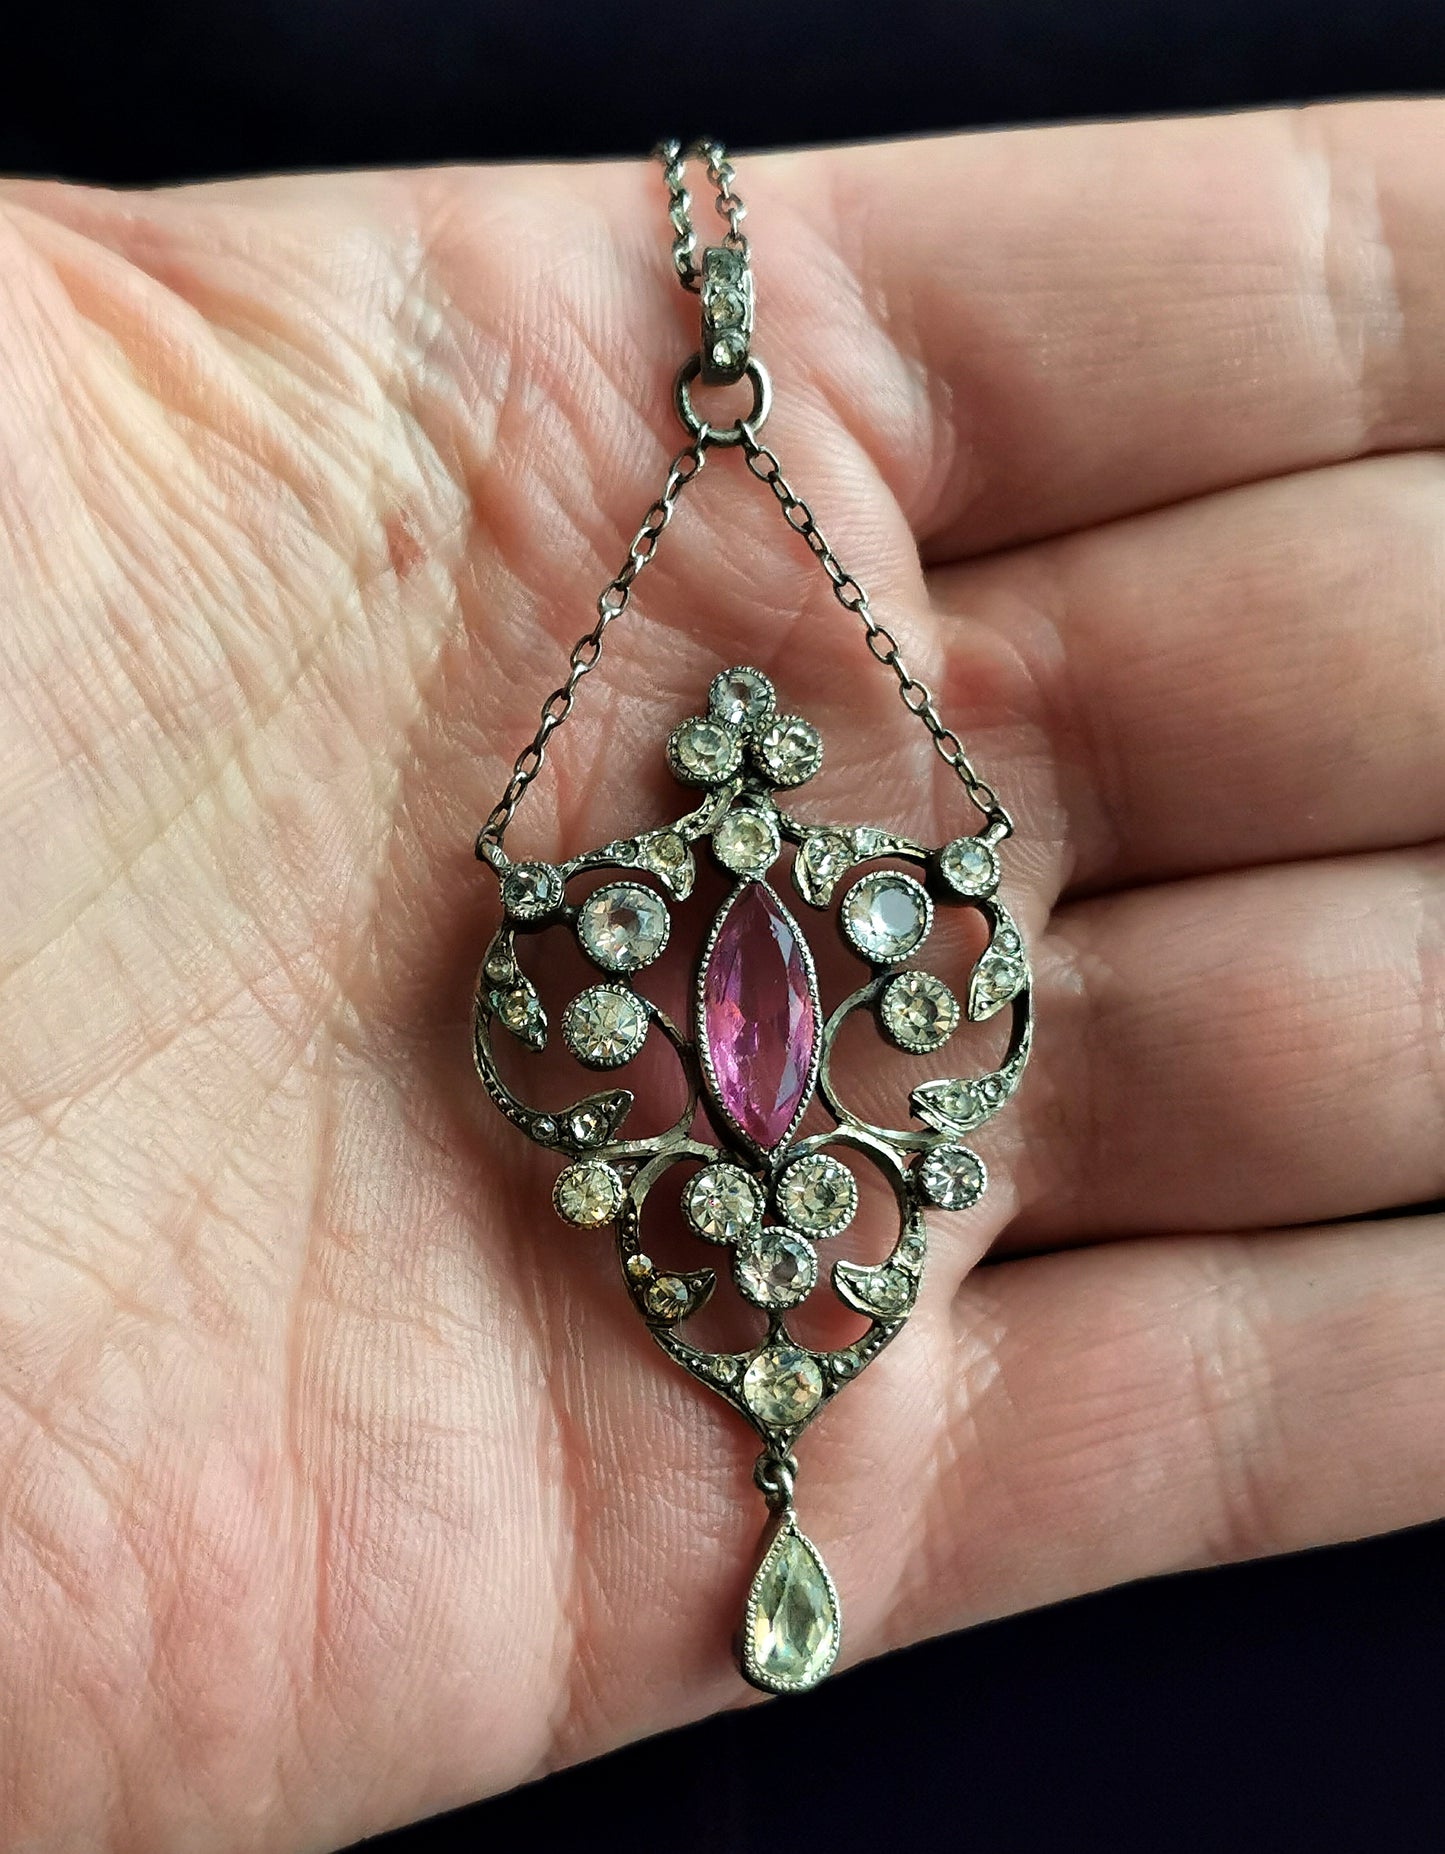 Antique Belle Epoque paste drop pendant necklace, sterling silver